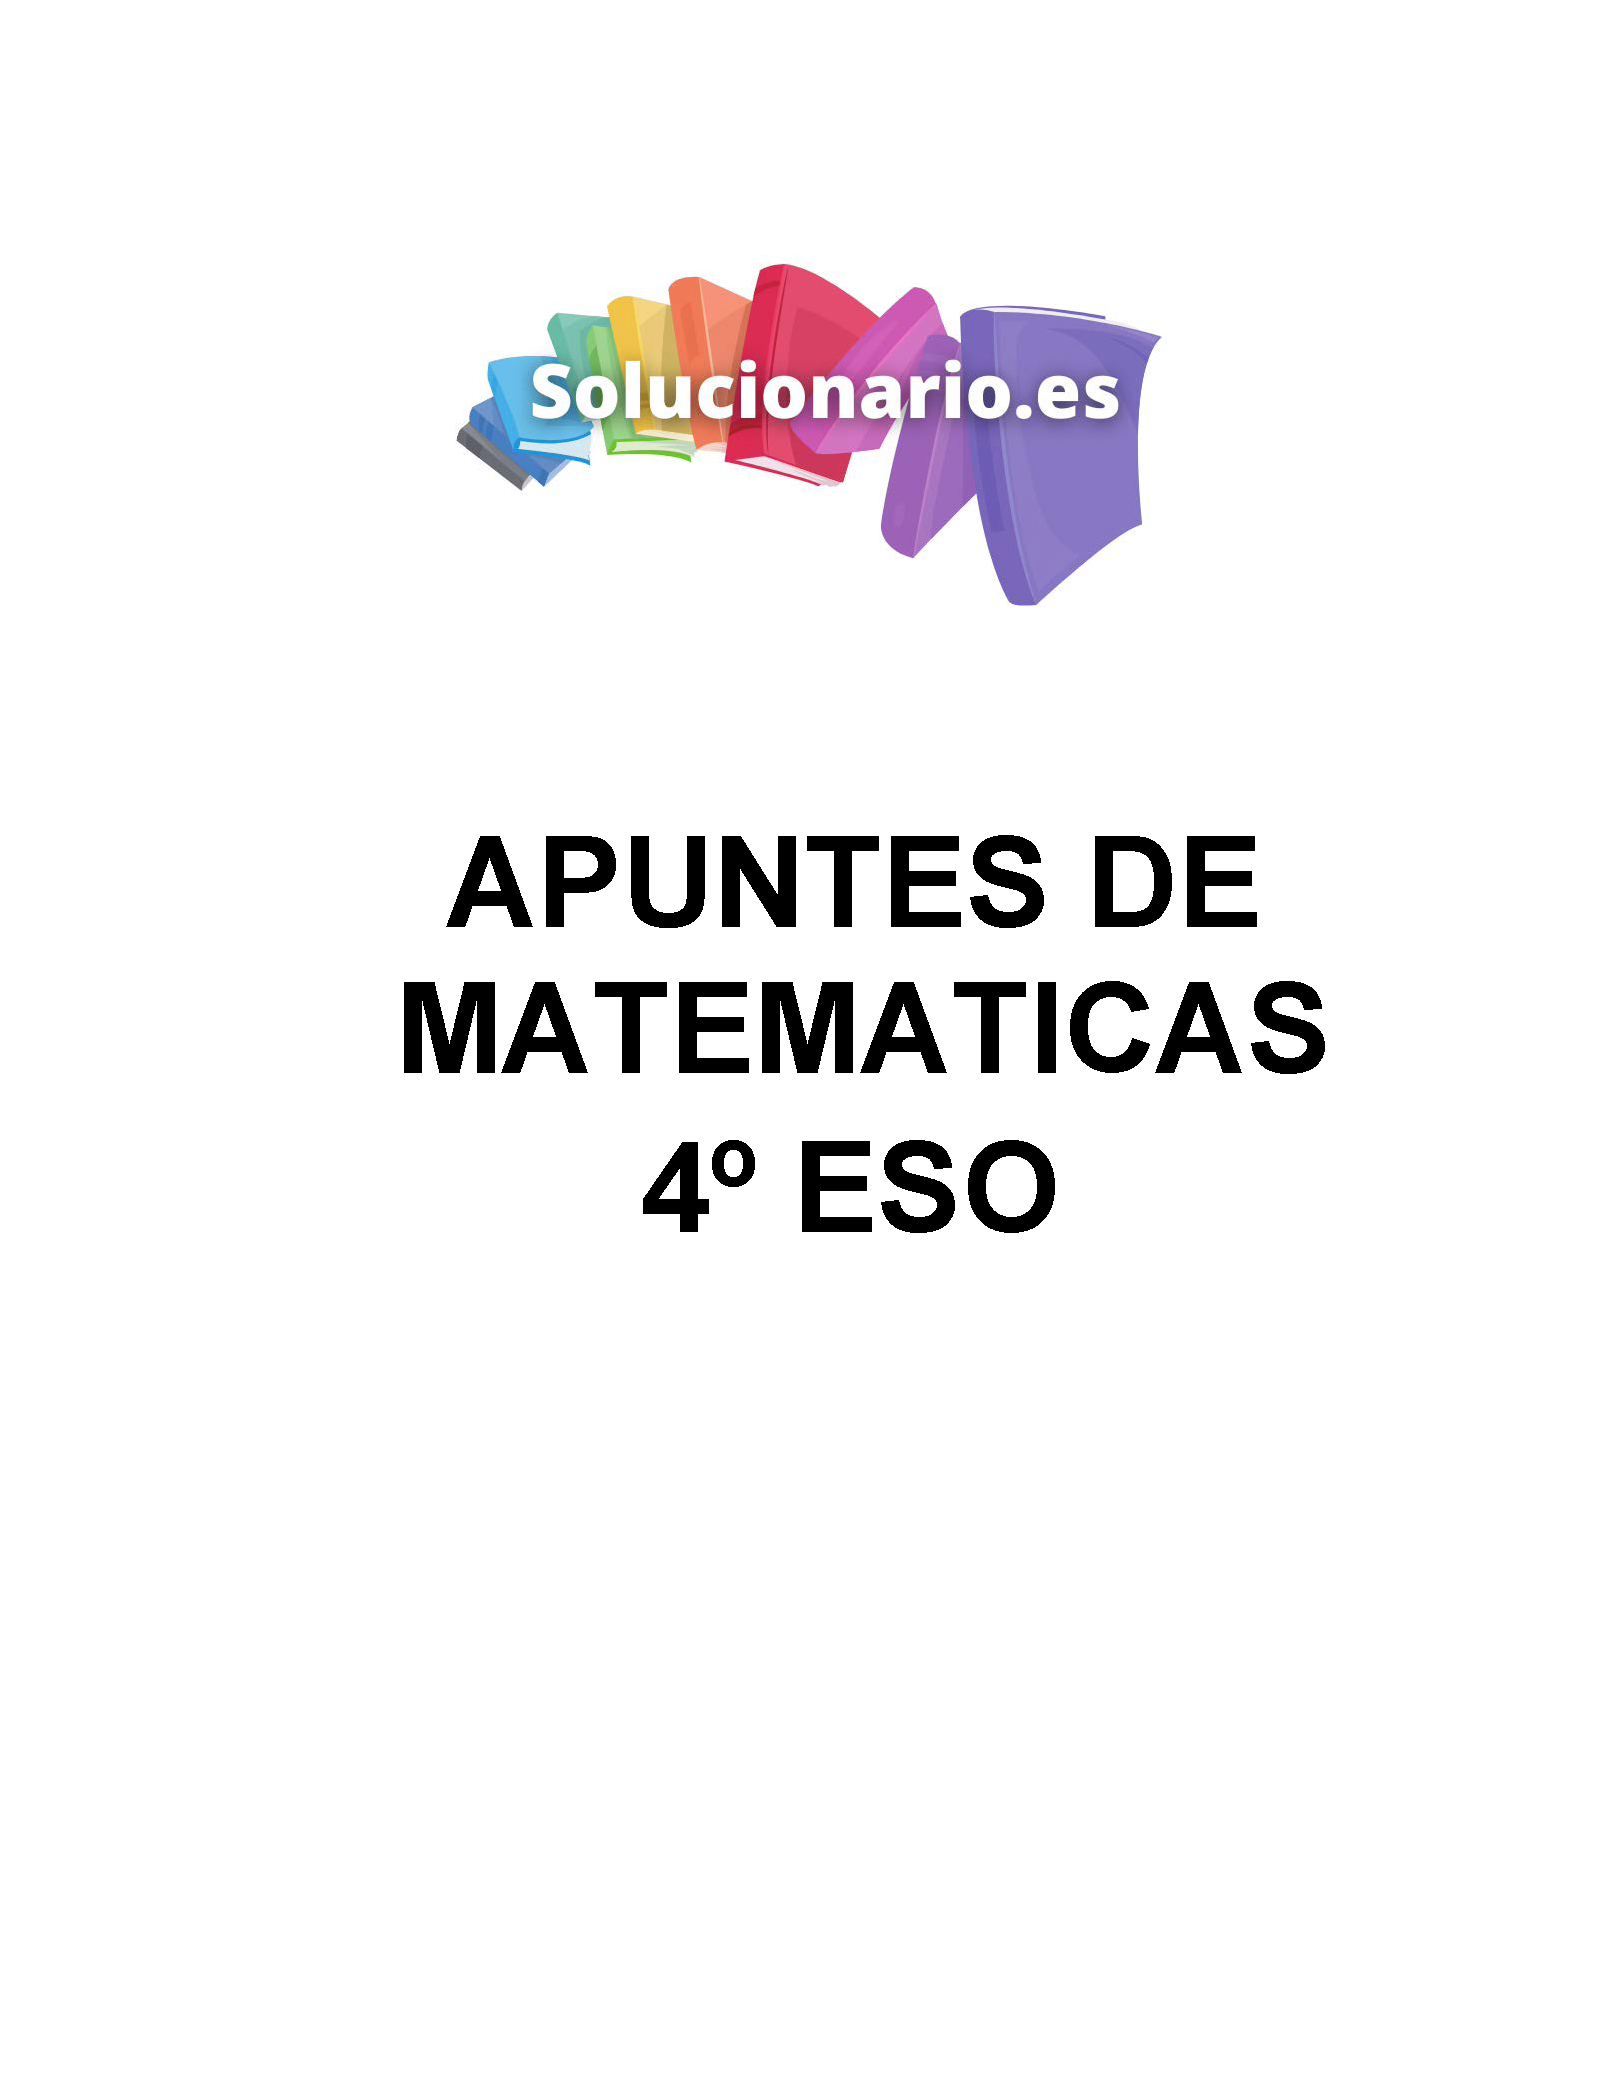 Apuntes Matemáticas Sucesiones 4 ESO 2020 / 2021